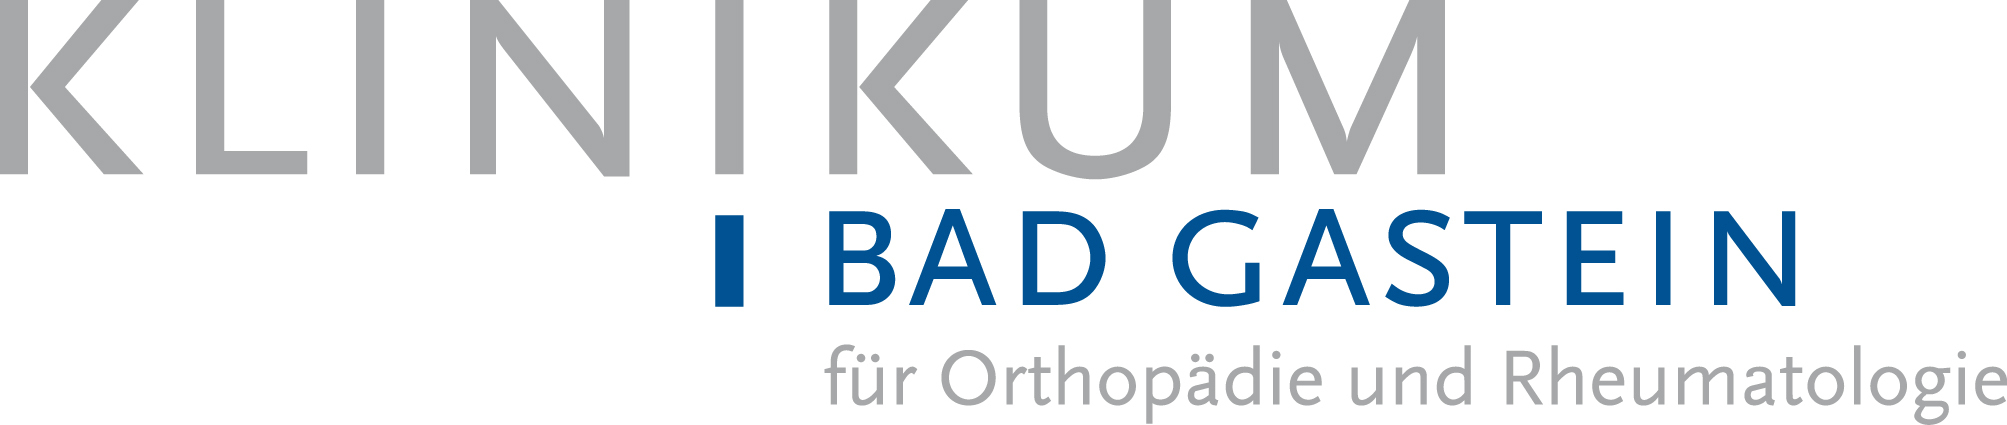 Logo der Klinikum Austria Gesundheitsgruppe GmbH 